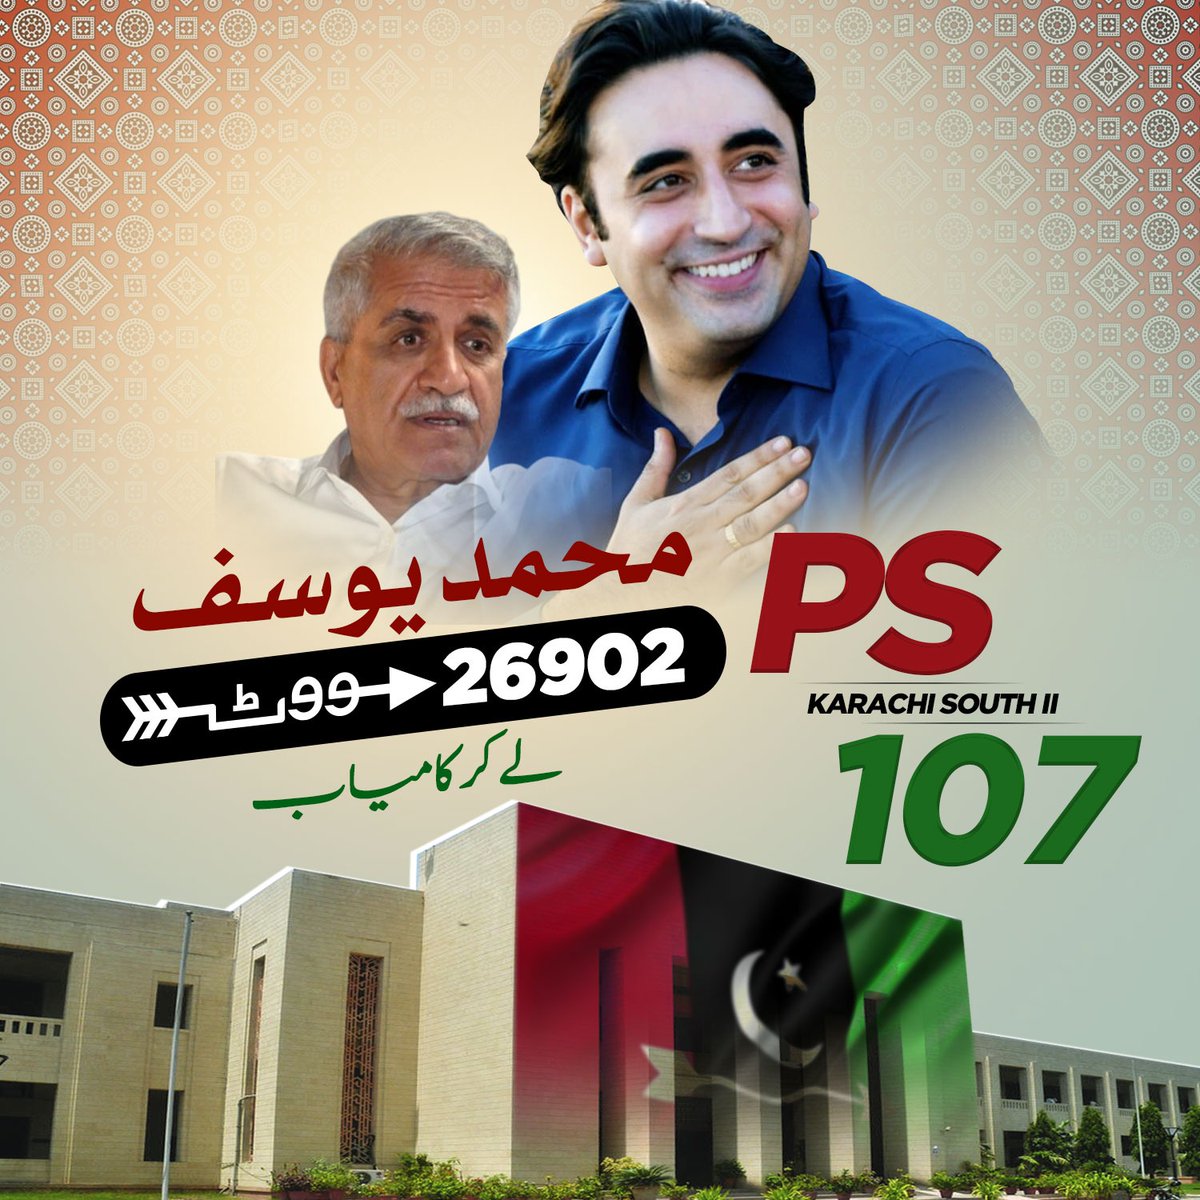 پاکستان پیپلز پارٹی کے امیدوار محمد یوسف بلوچ PS107 ضلع جنوبی کراچی سے 26,902 ووٹ لے کر کامیاب۔ 
 @BBhuttoZardari @yousufbalochppp @khalil_hoat
#چنو_نئی_سوچ_کو